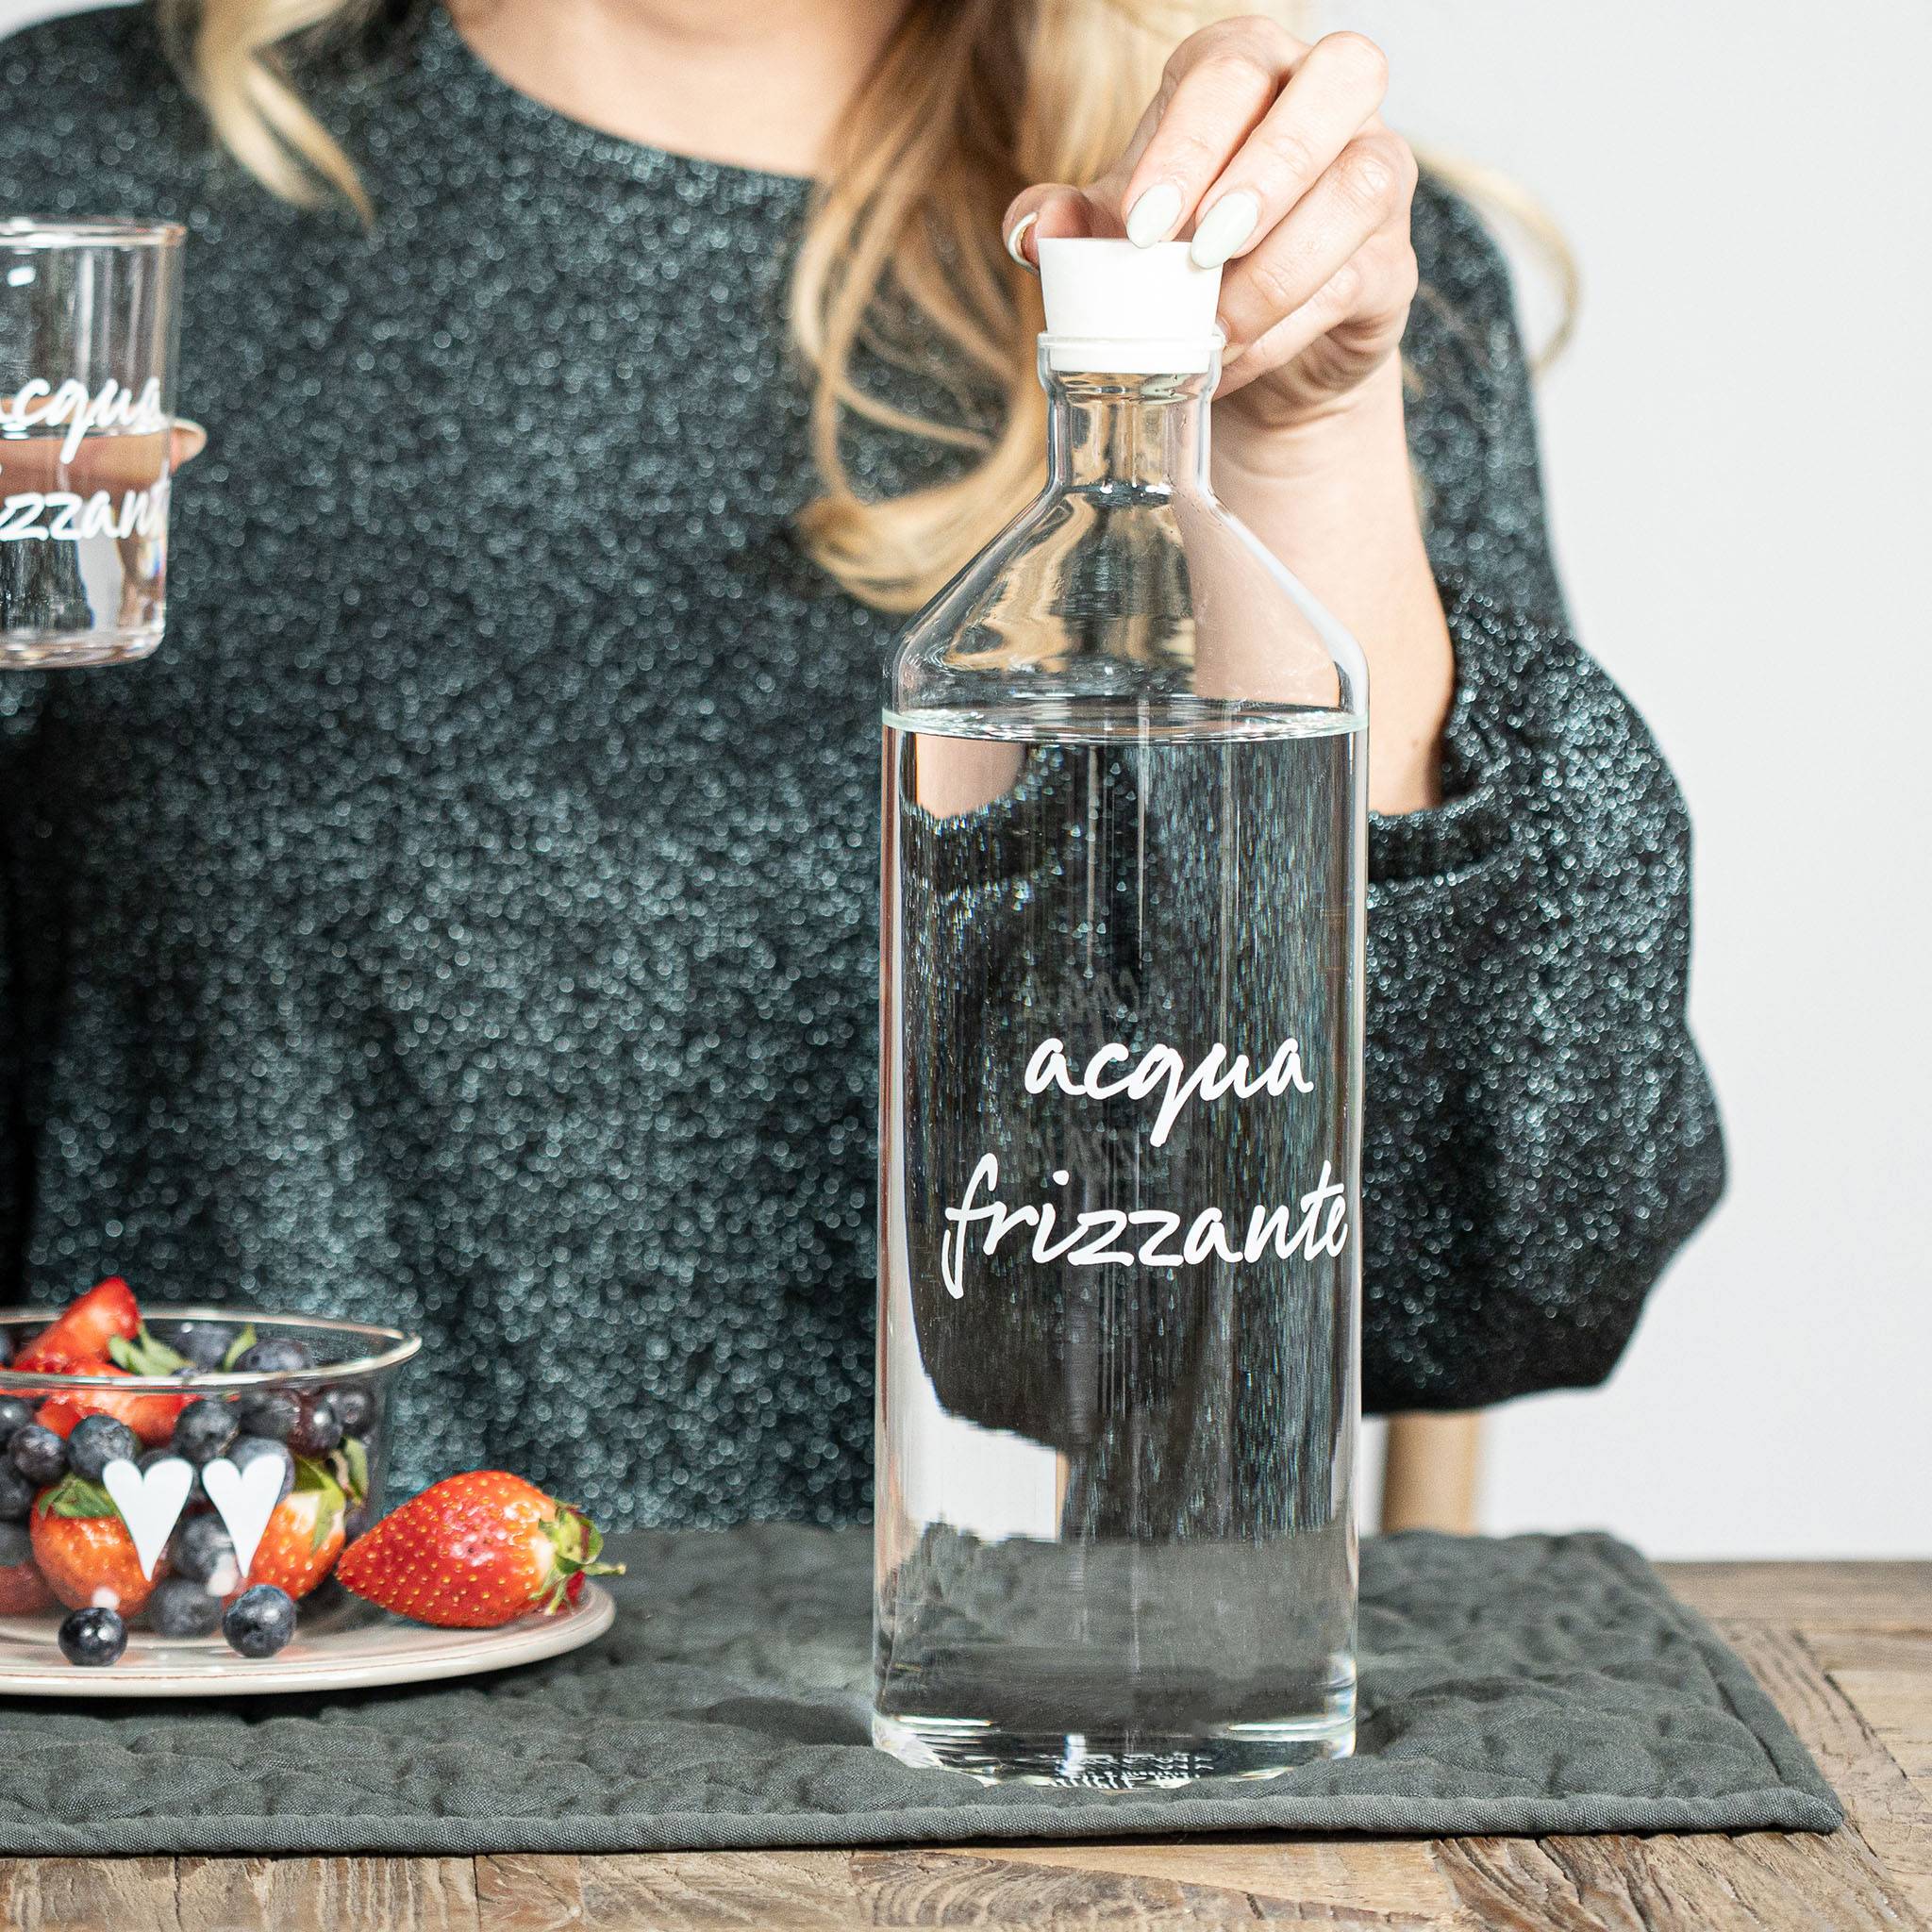 Bottiglia Acqua Frizzante — Simple Day